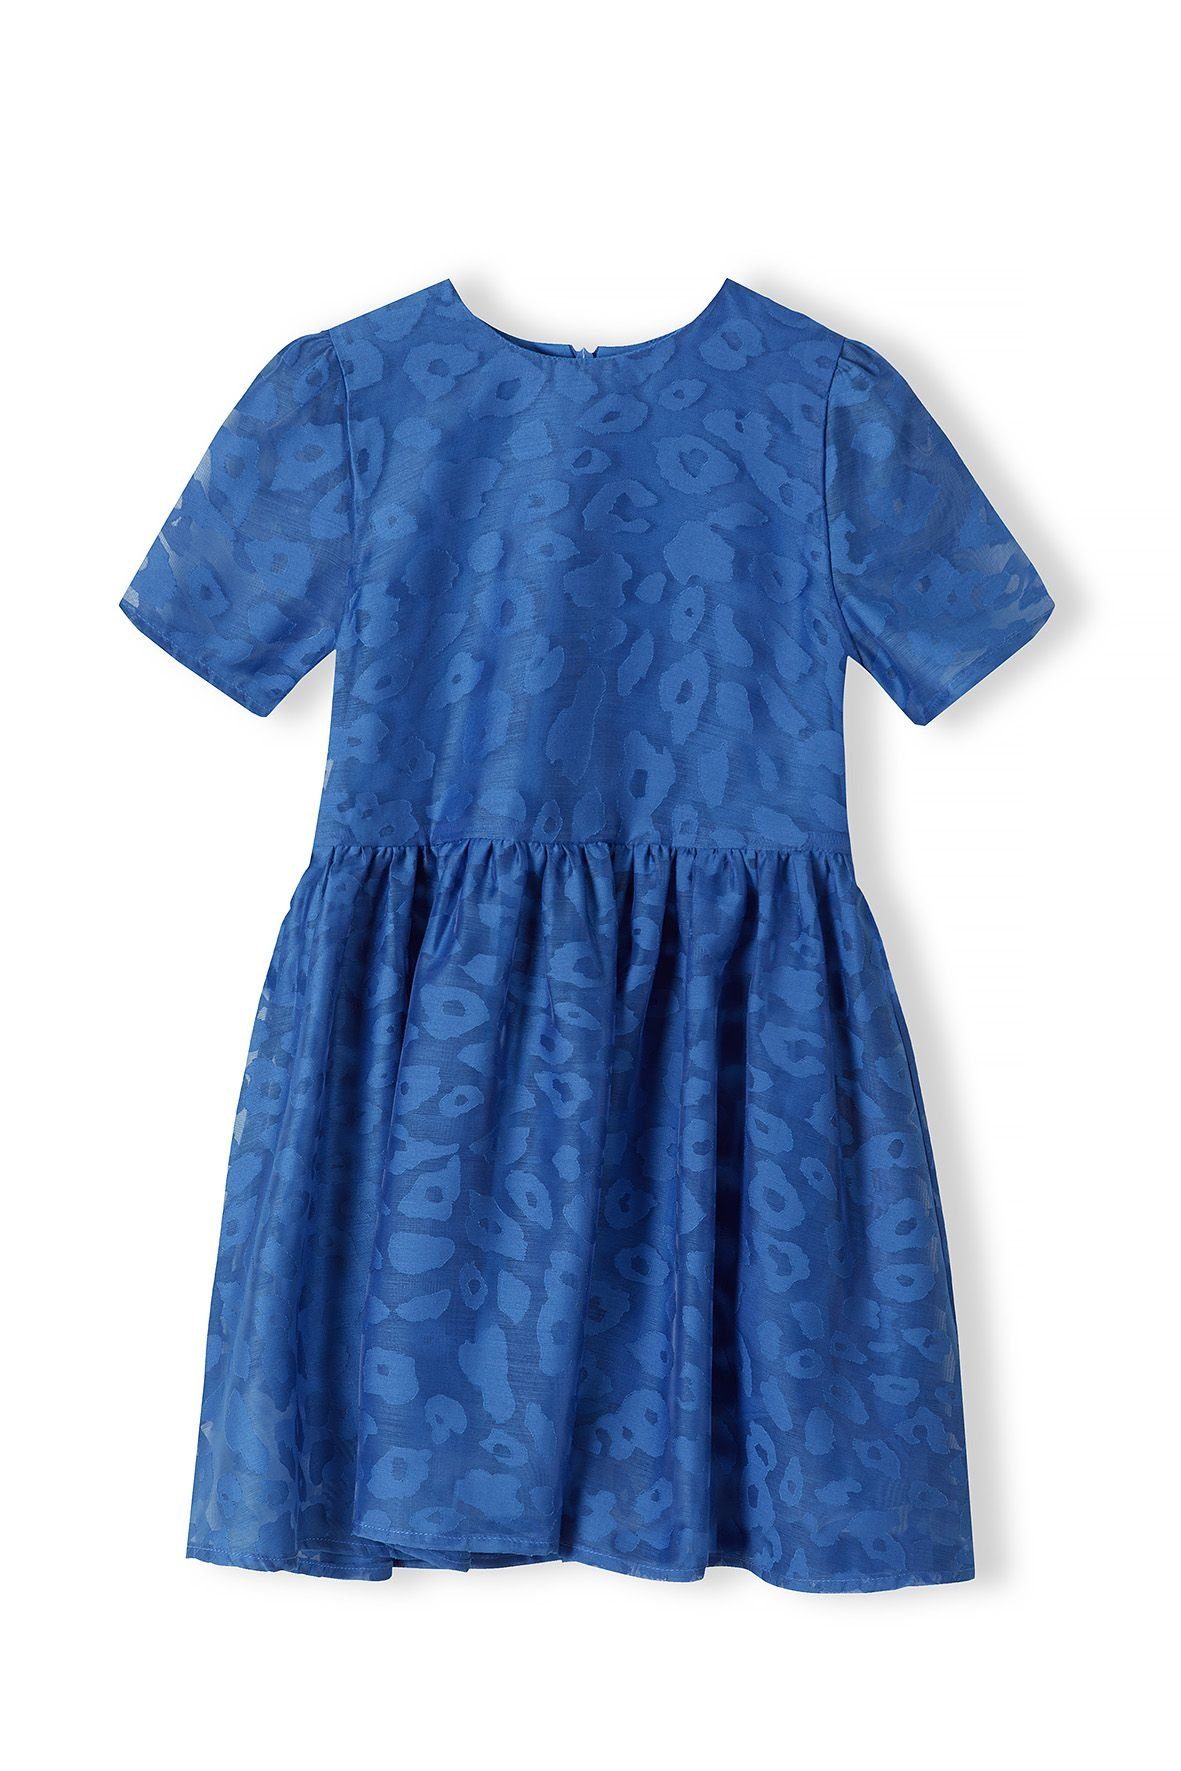 MINOTI Partykleid mit Jacquard-Muster(3-14y) Blau | Partykleider